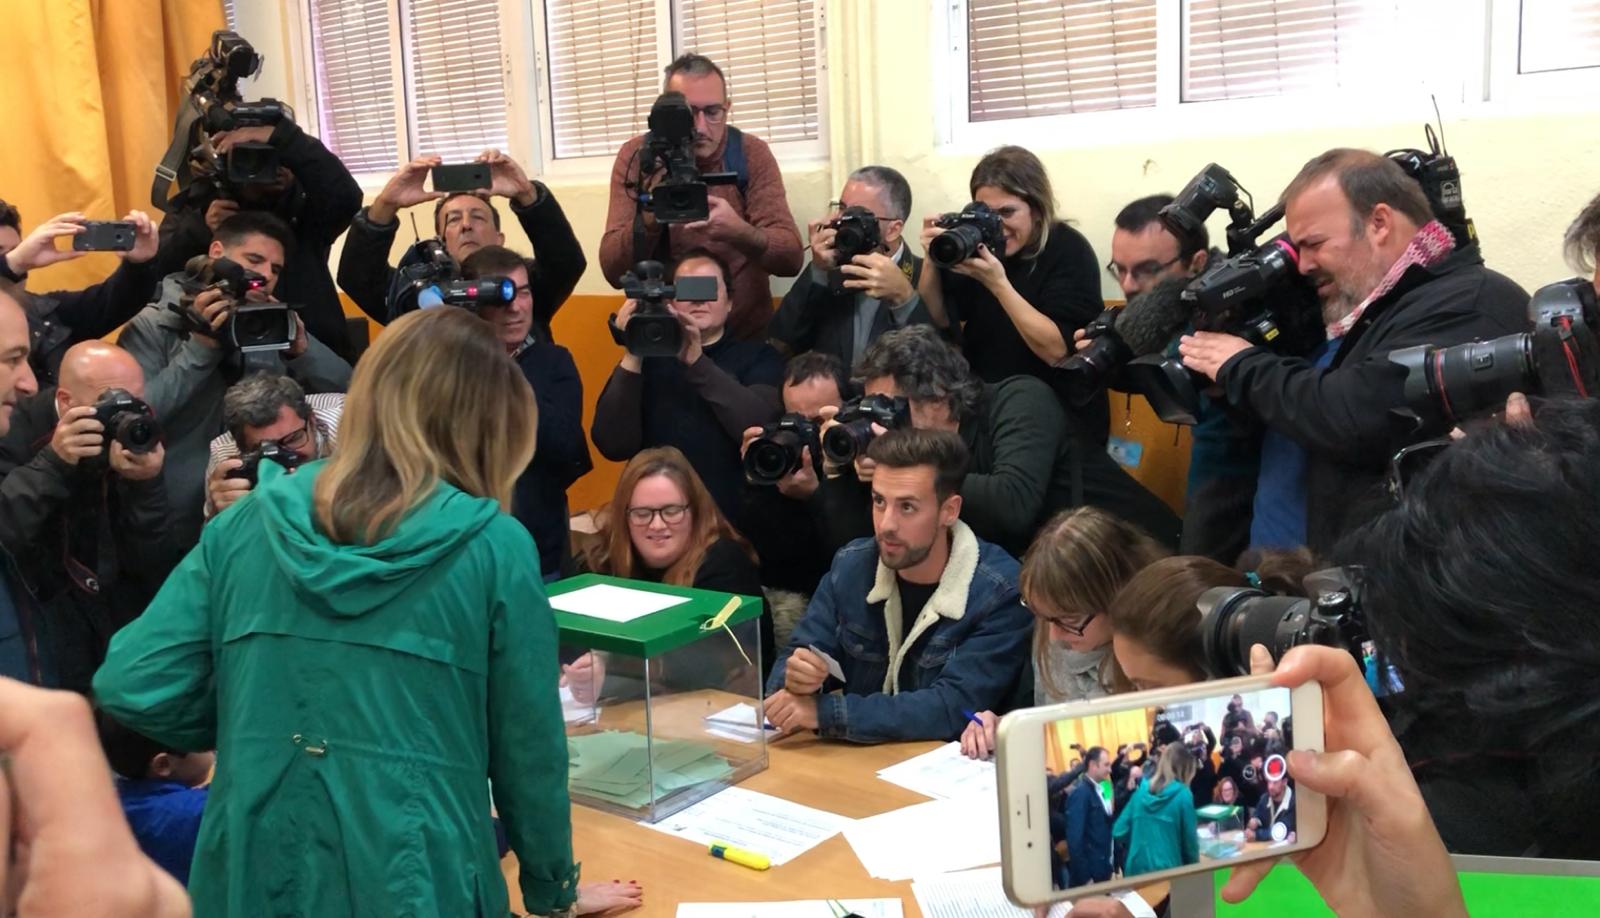 Vídeo | Apoderats de Vox escridassen Susana Díaz mentre vota: "Se t'acaba la bicoca"